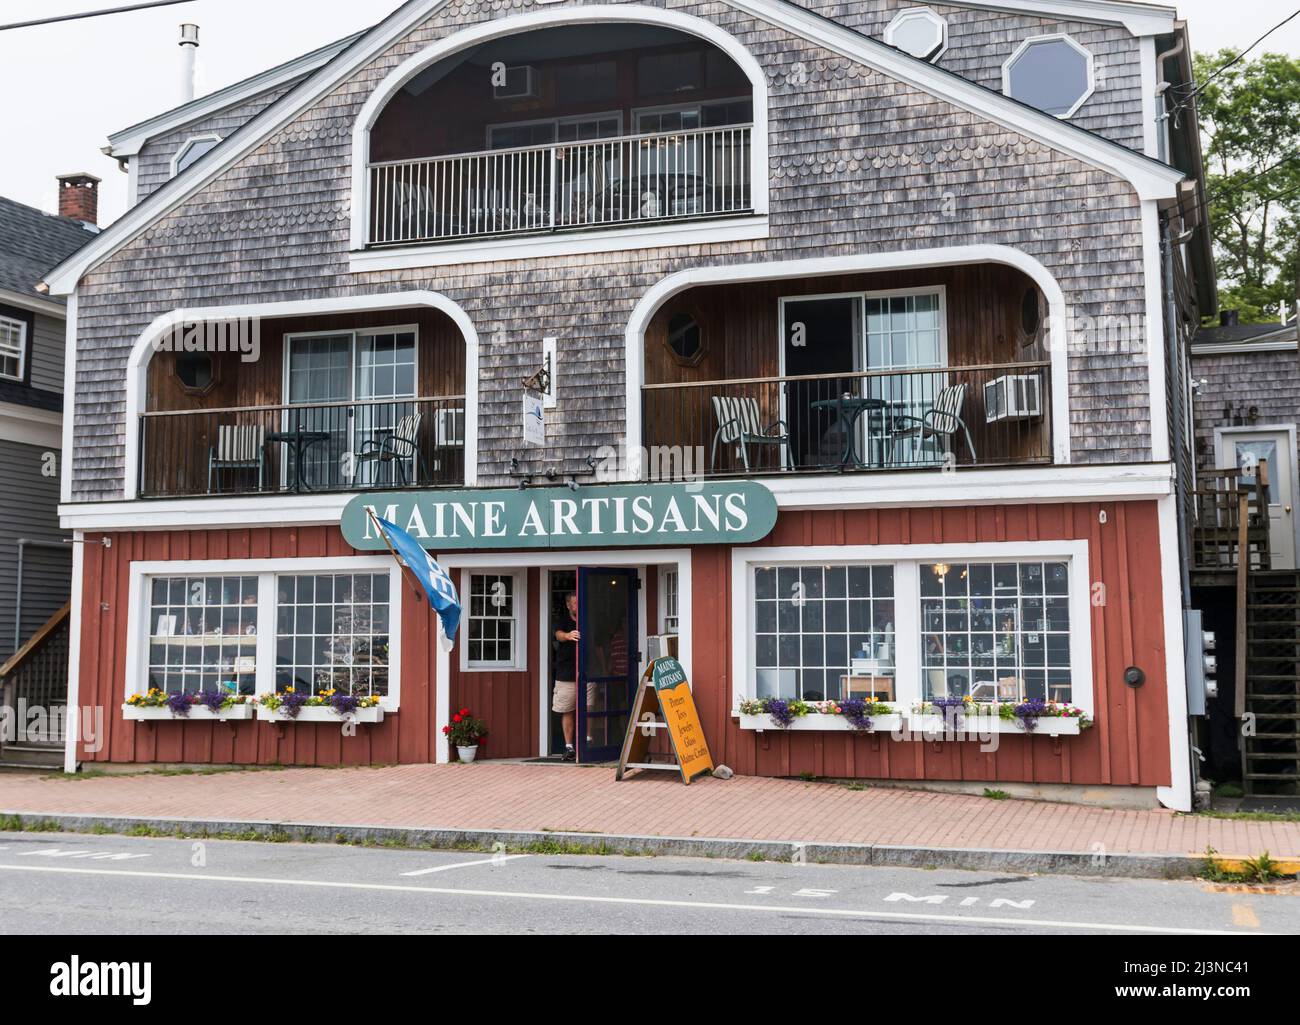 Lincolnville, Maine, États-Unis - 2 août 2017 : un magasin sur la rue principale qui vend des œuvres d'art de nombreux artistes du Maine. Banque D'Images